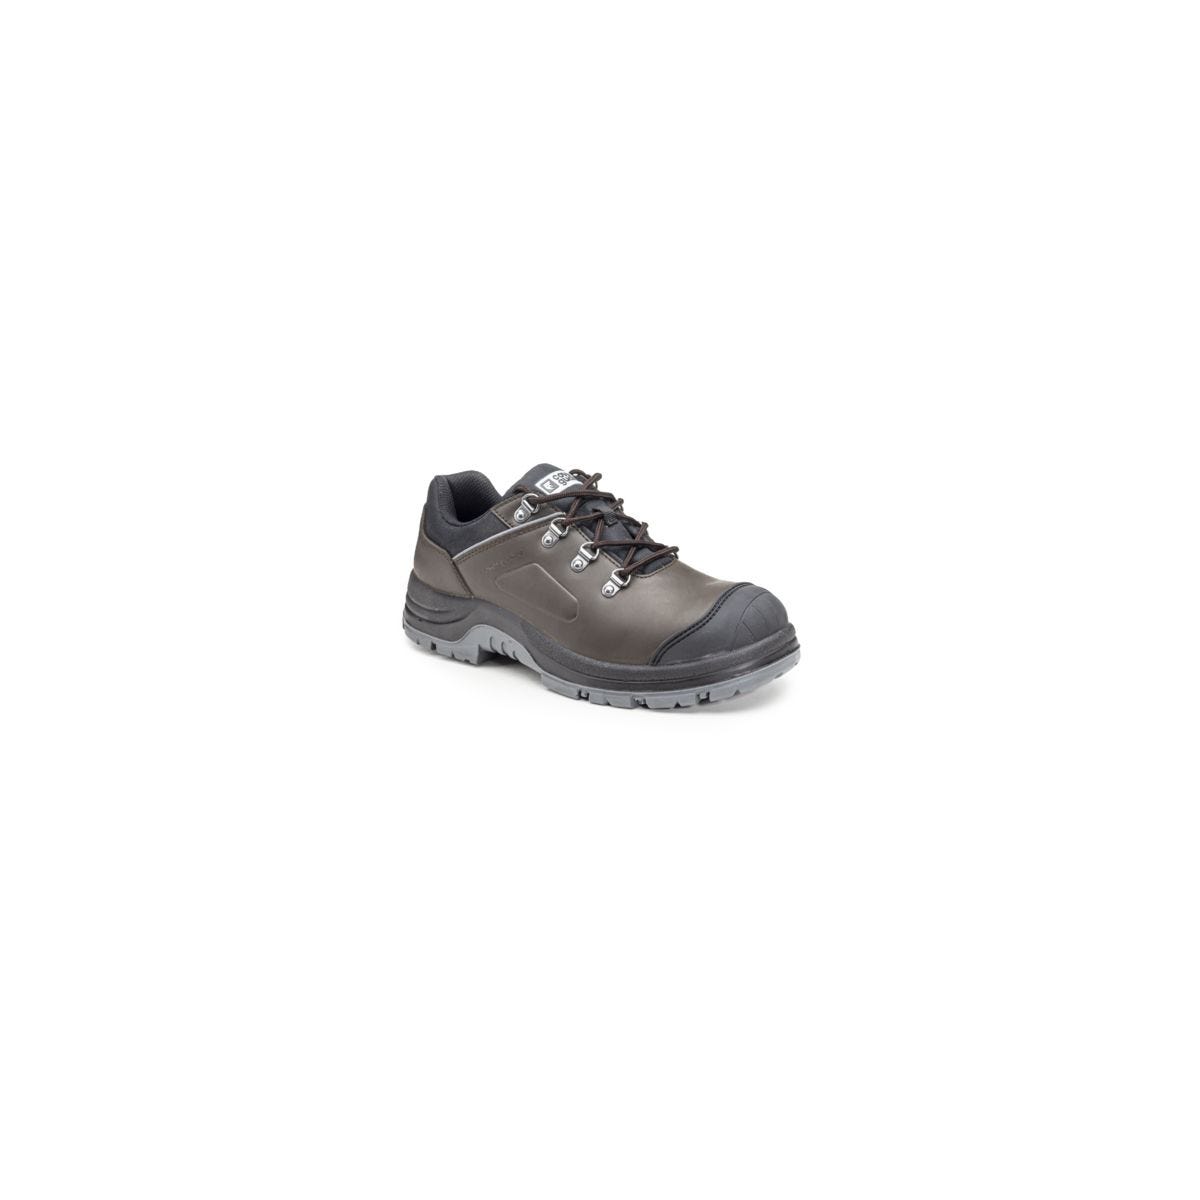 Chaussures de sécurité S3 FLINT Basse Croute de cuir Marron - COVERGUARD - Taille 43 0